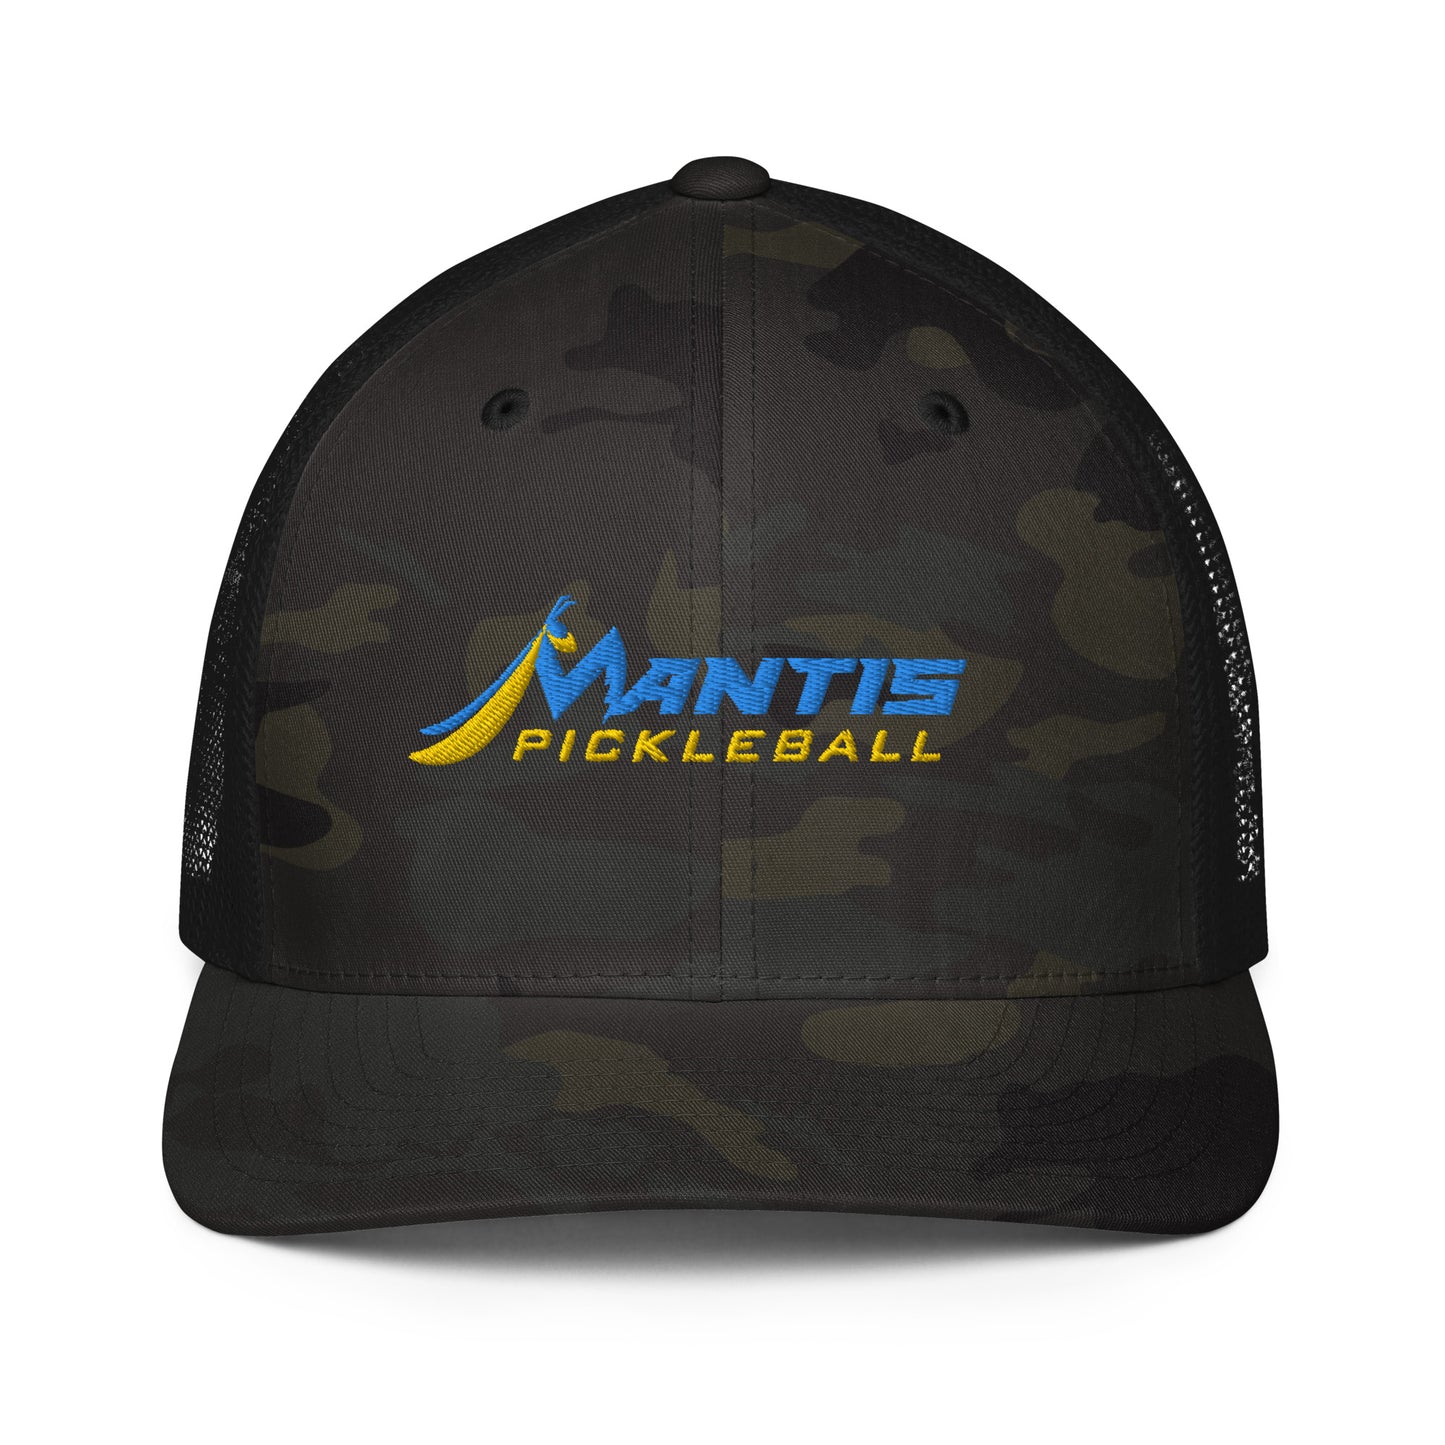 Mantis Mesh back trucker cap